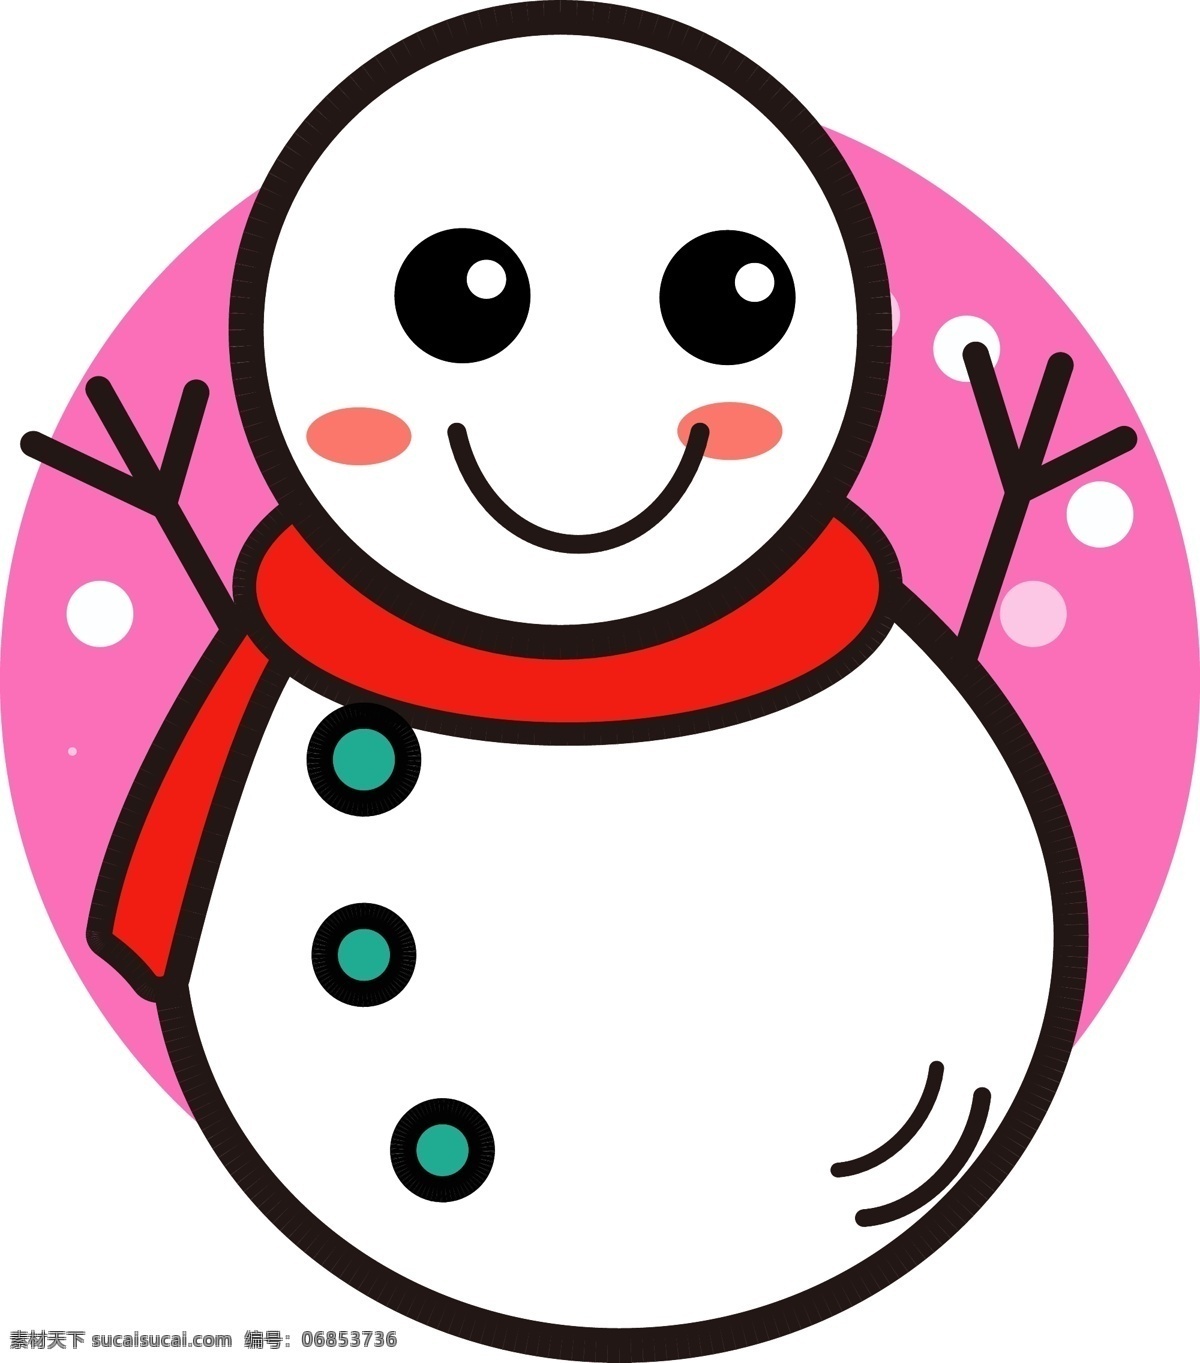 冬季 元素 卡通 可爱 雪人 商用 冬季元素 卡通可爱 简约 围巾